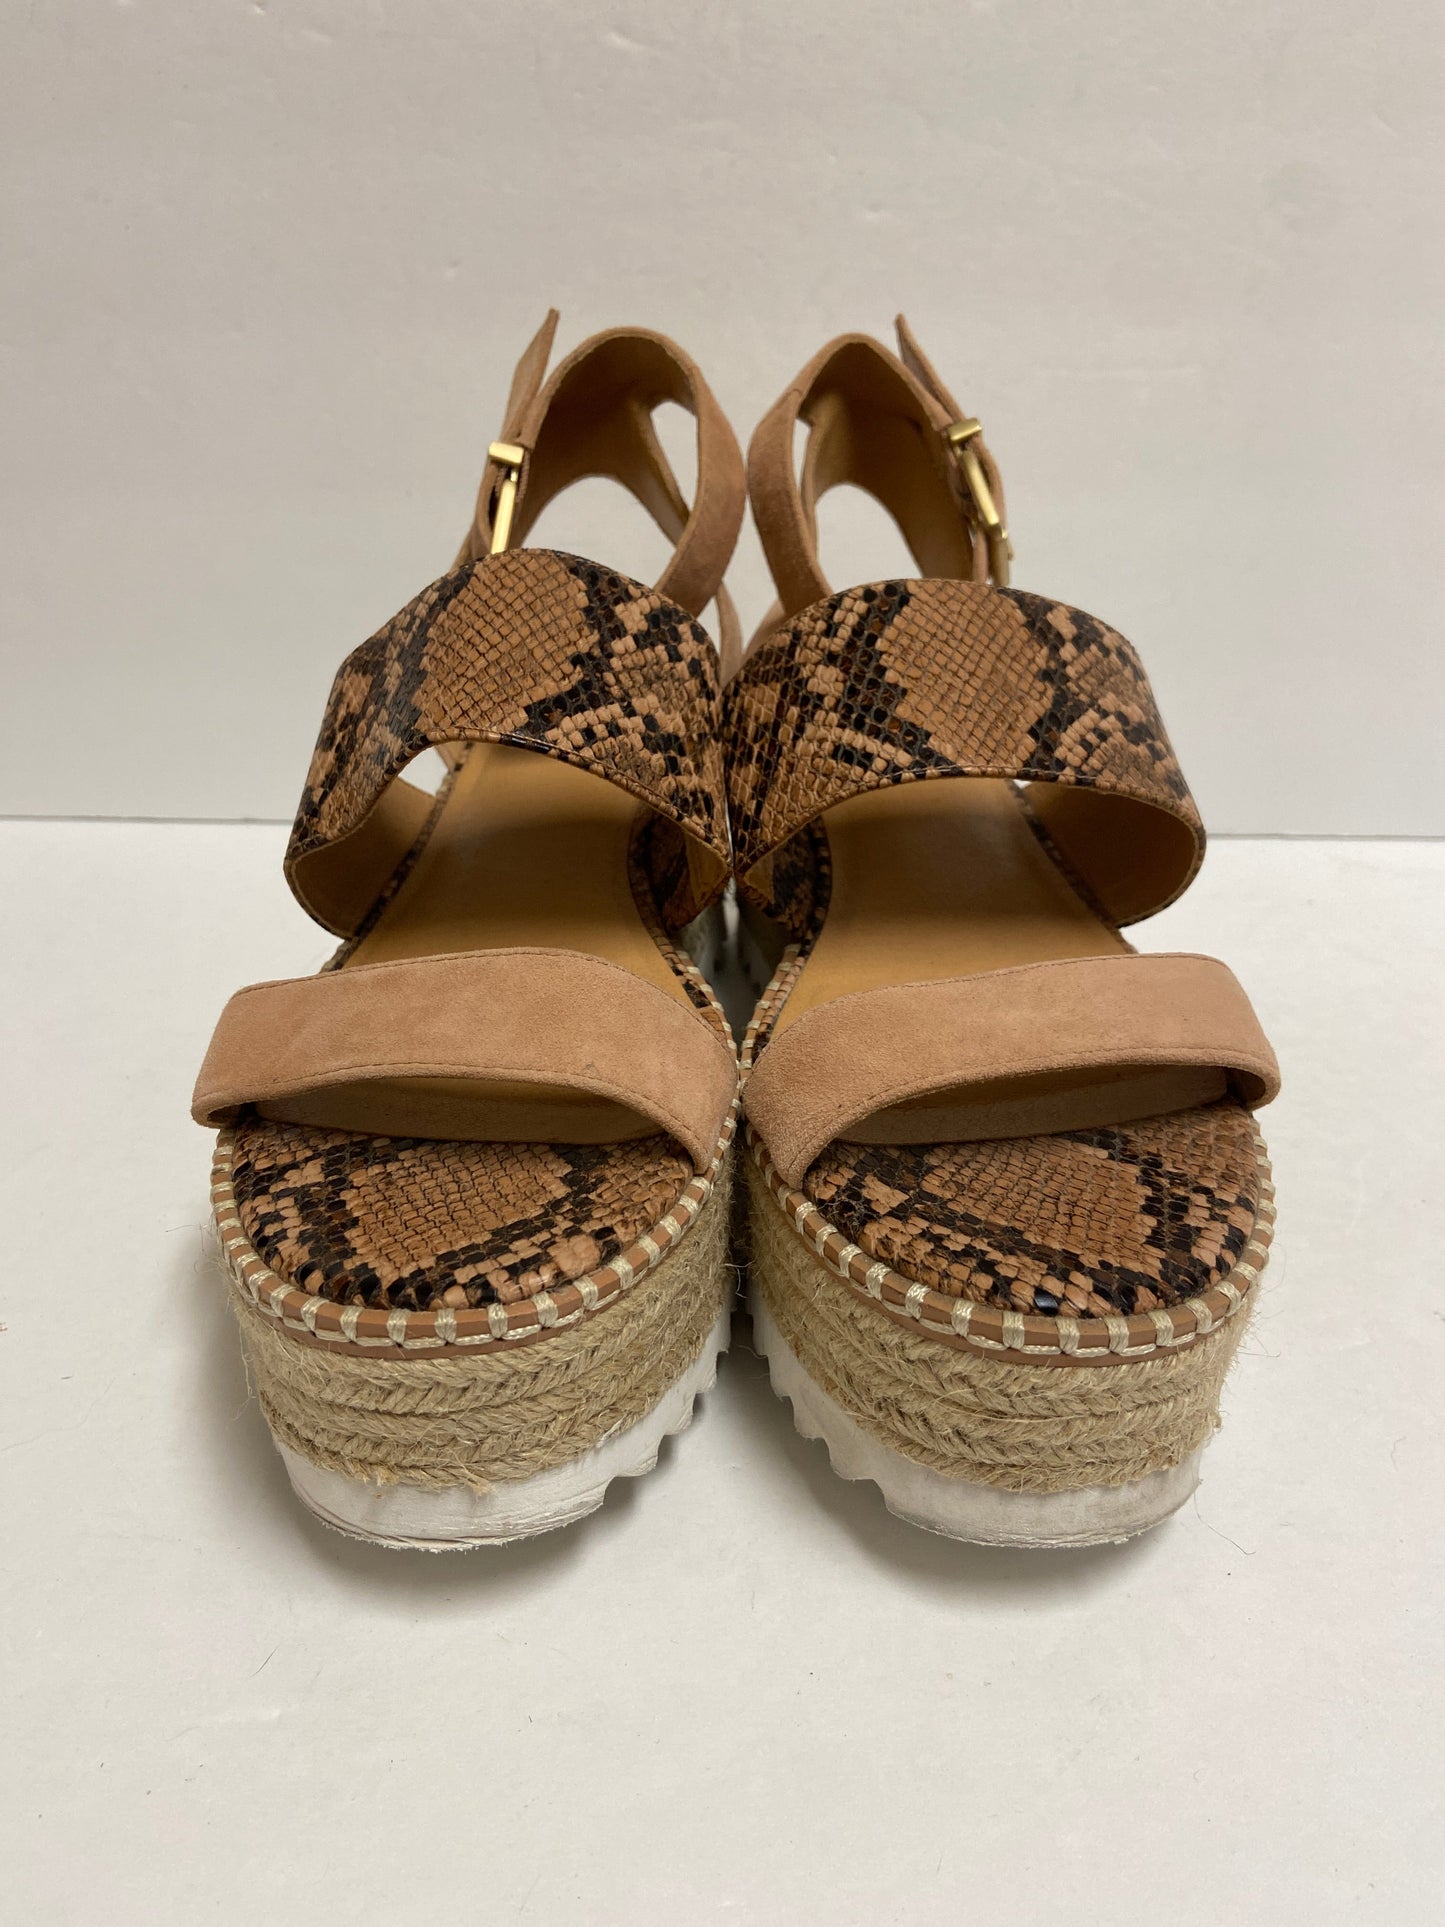 Sandals Heels Wedge By Crown Vintage  Size: 8.5